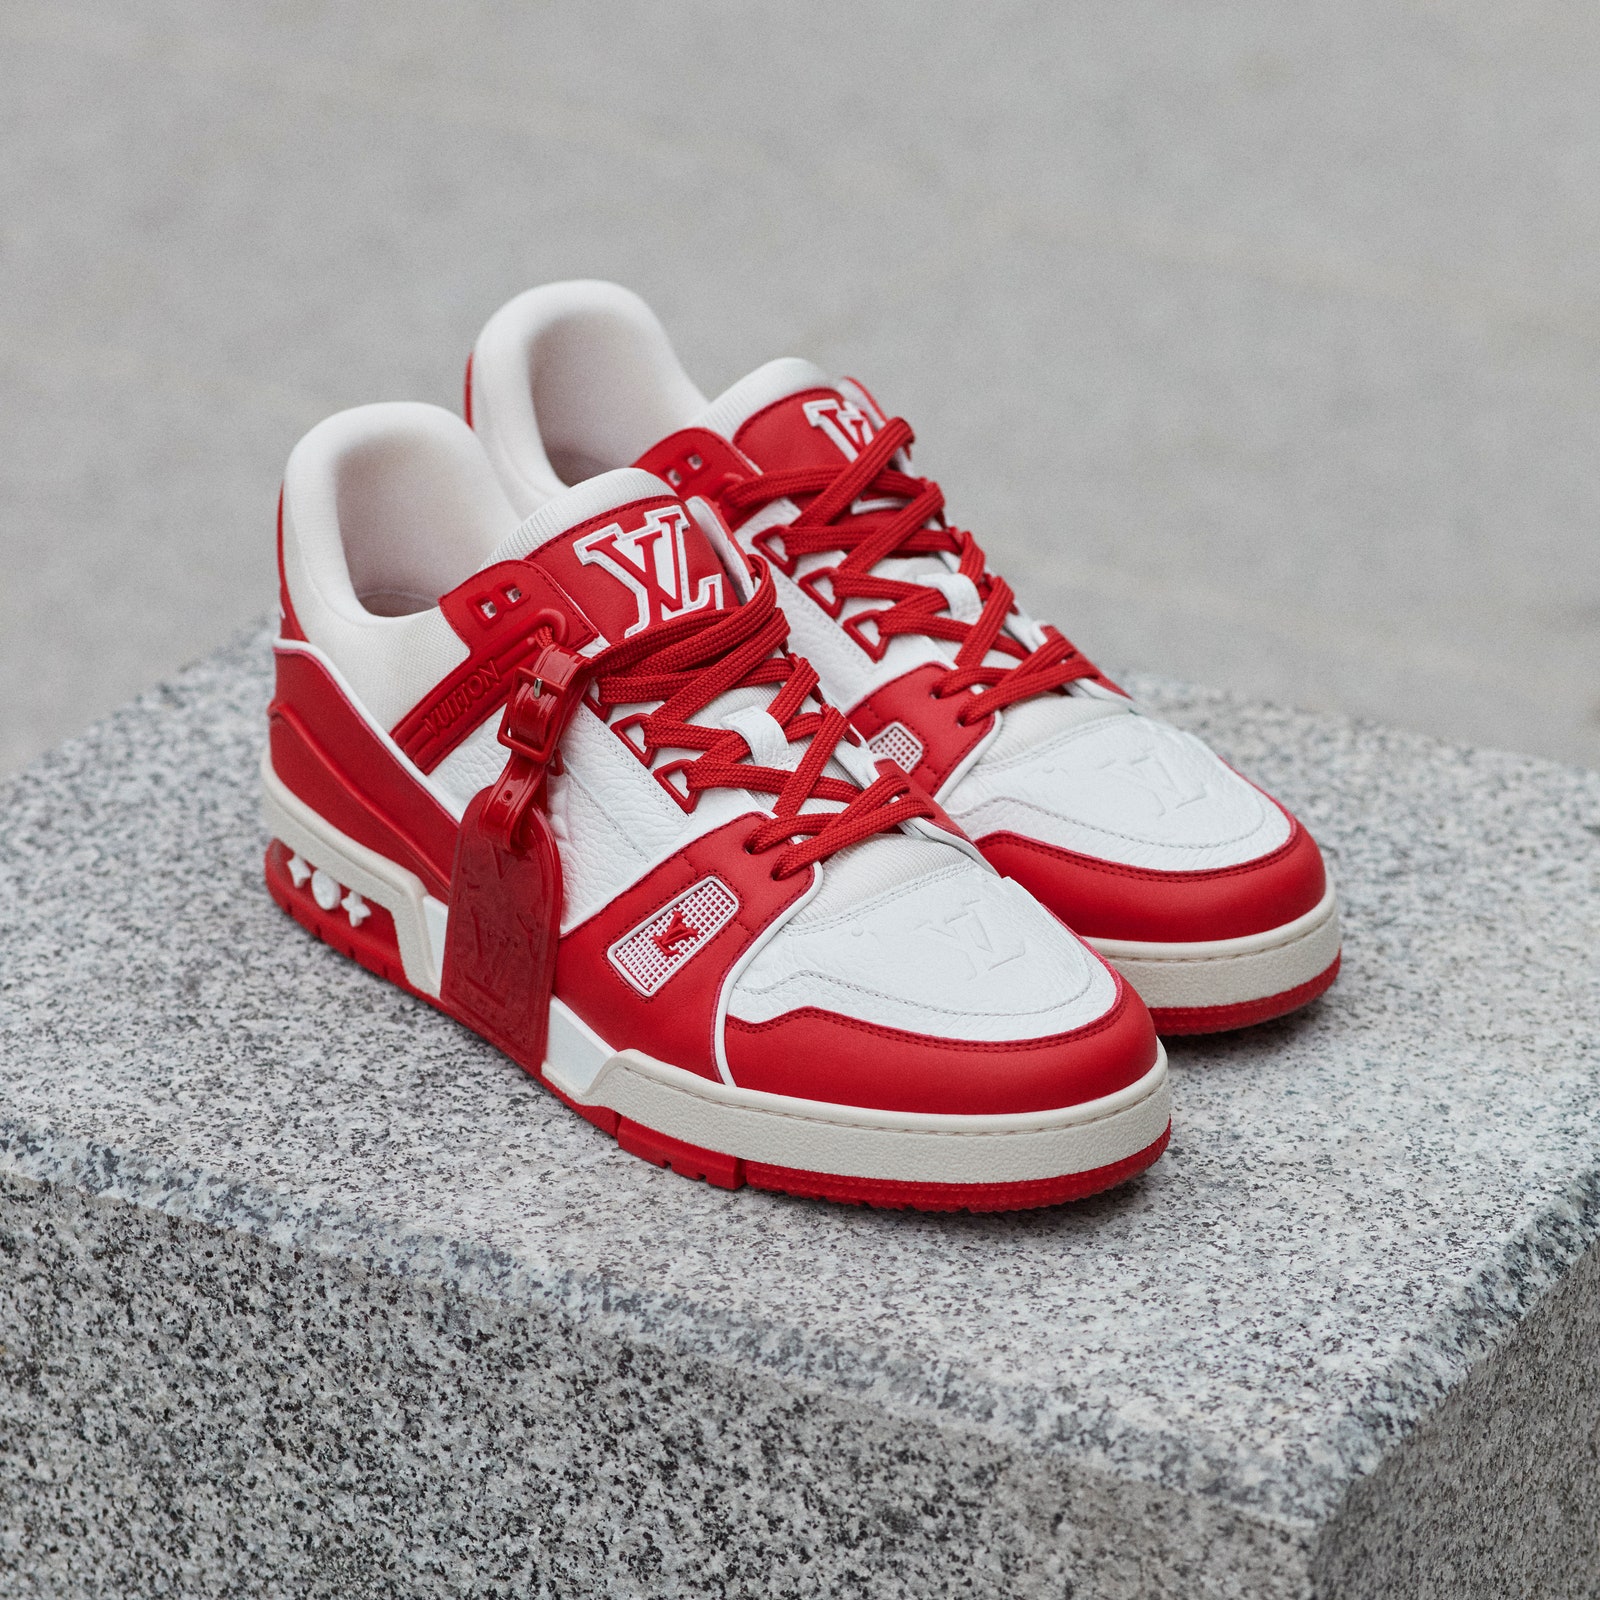 Louis Vuitton представили новые кроссовки RED в поддержку борьбы со СПИДом